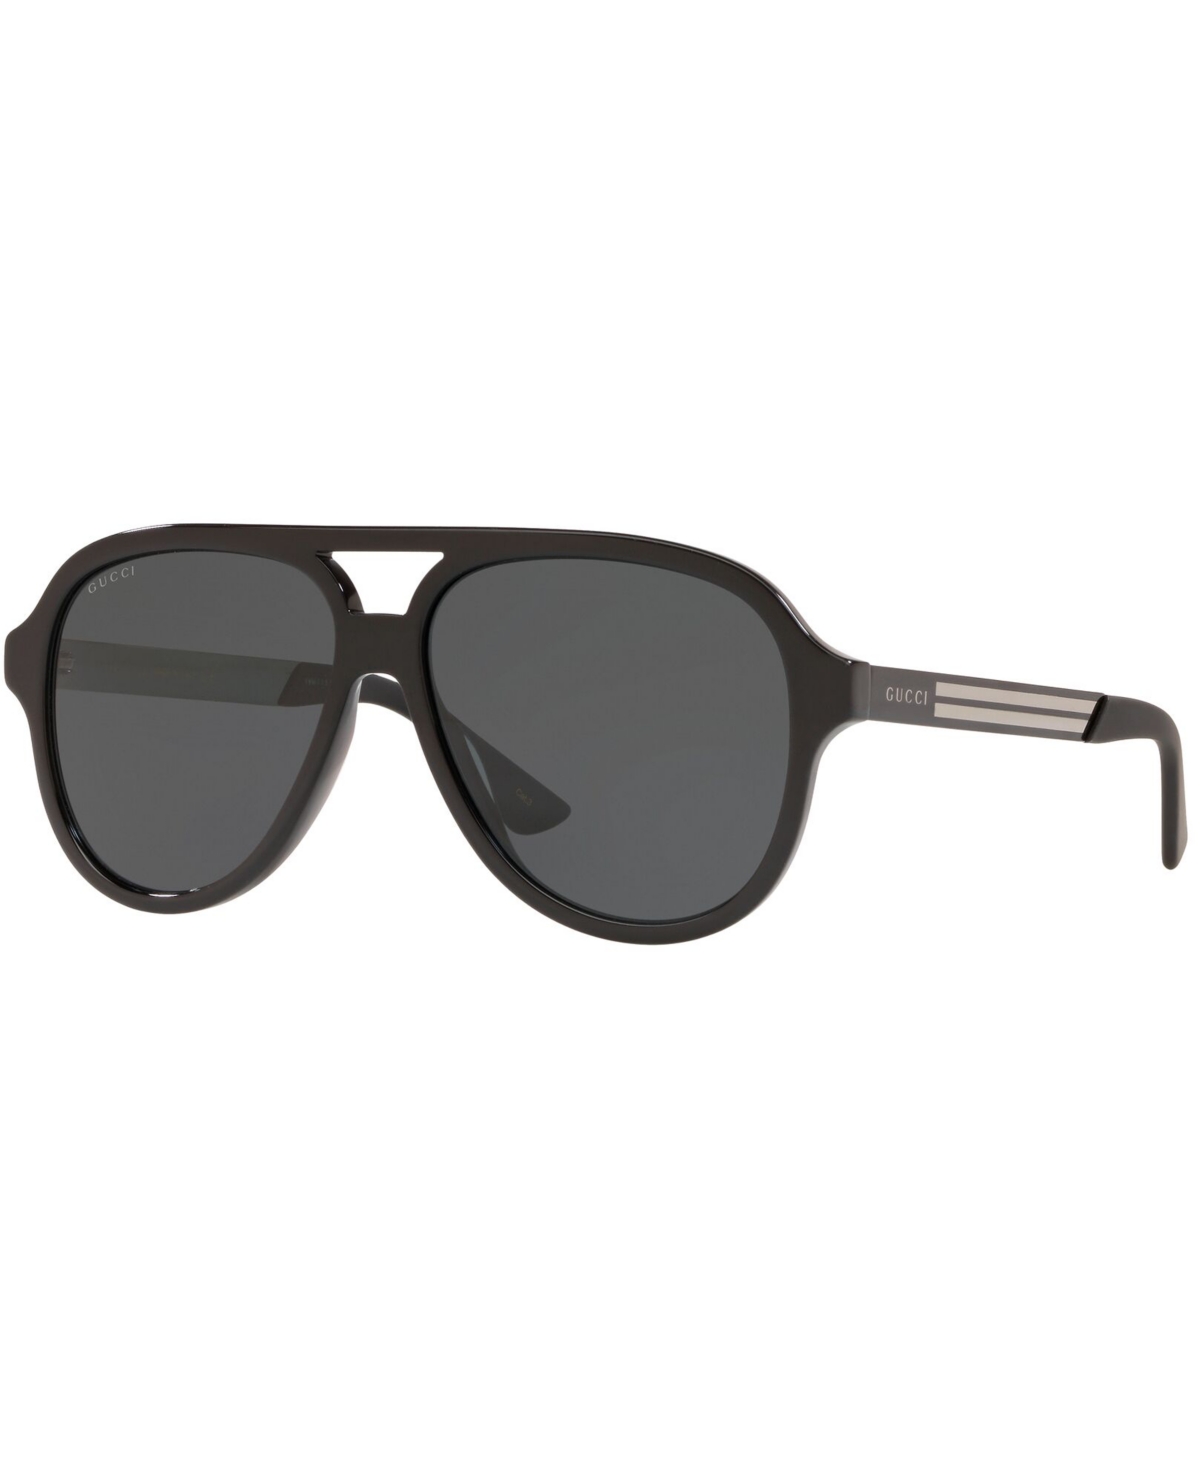 Gucci Men's Sunglasses, Gg0688s In Black Shiny,grey